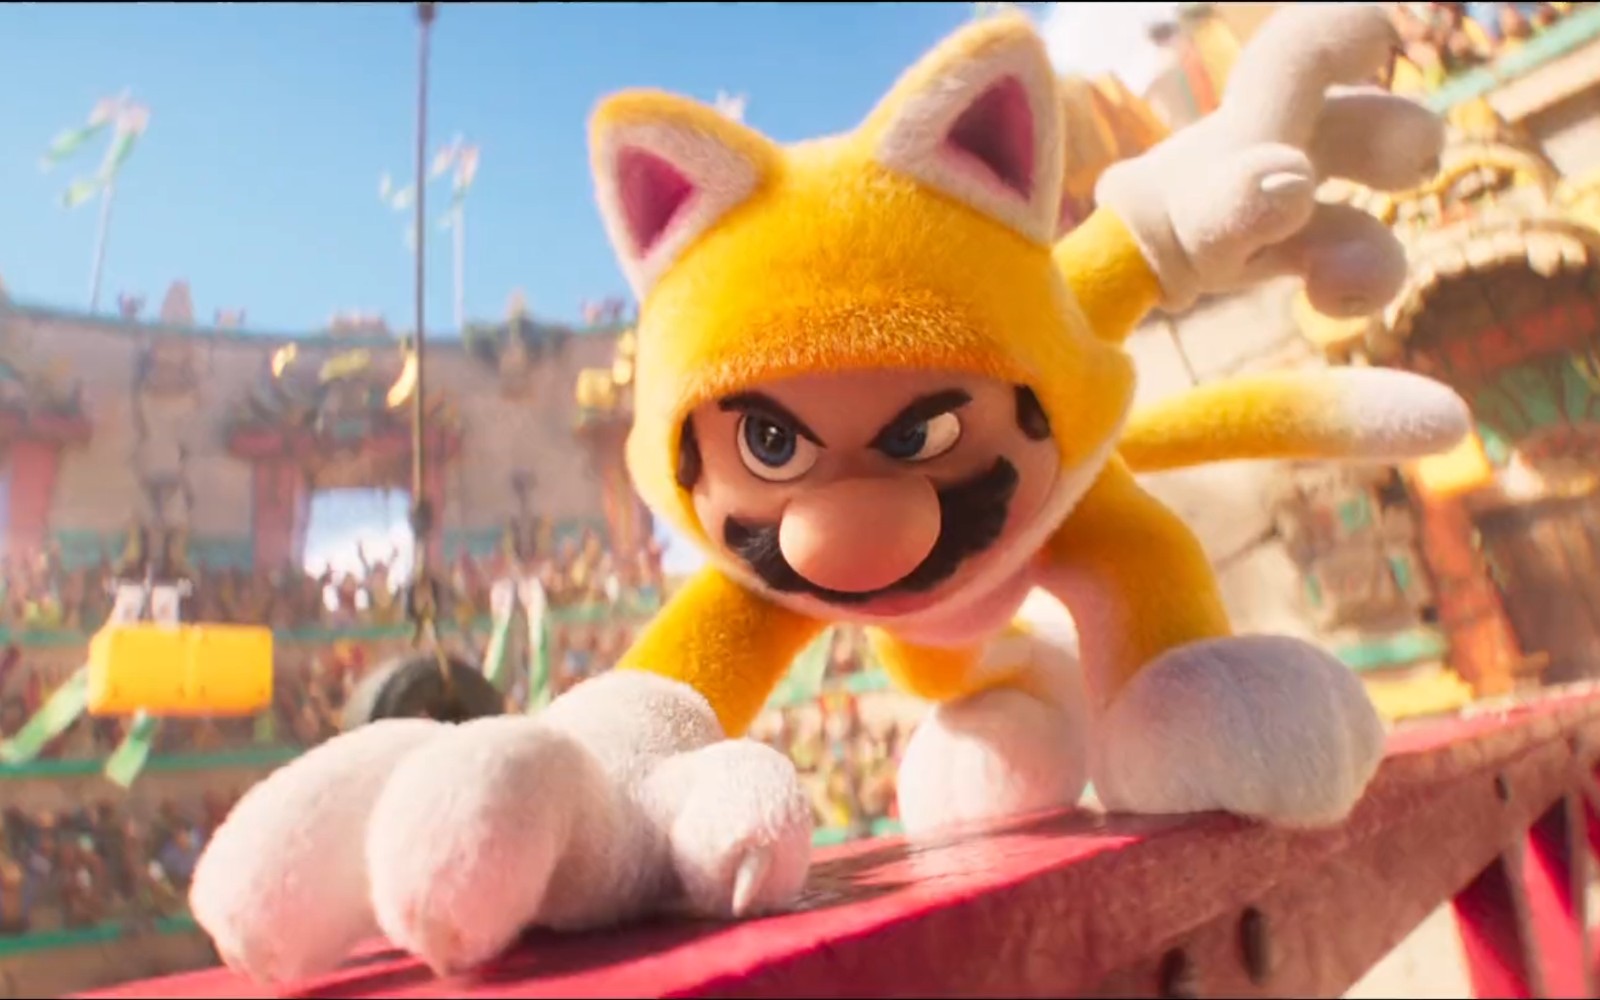 Đoạn giới thiệu mới nhất của 'Super Mario Bros. Movie' cho thấy Cat Mario đấu với Donkey Kong